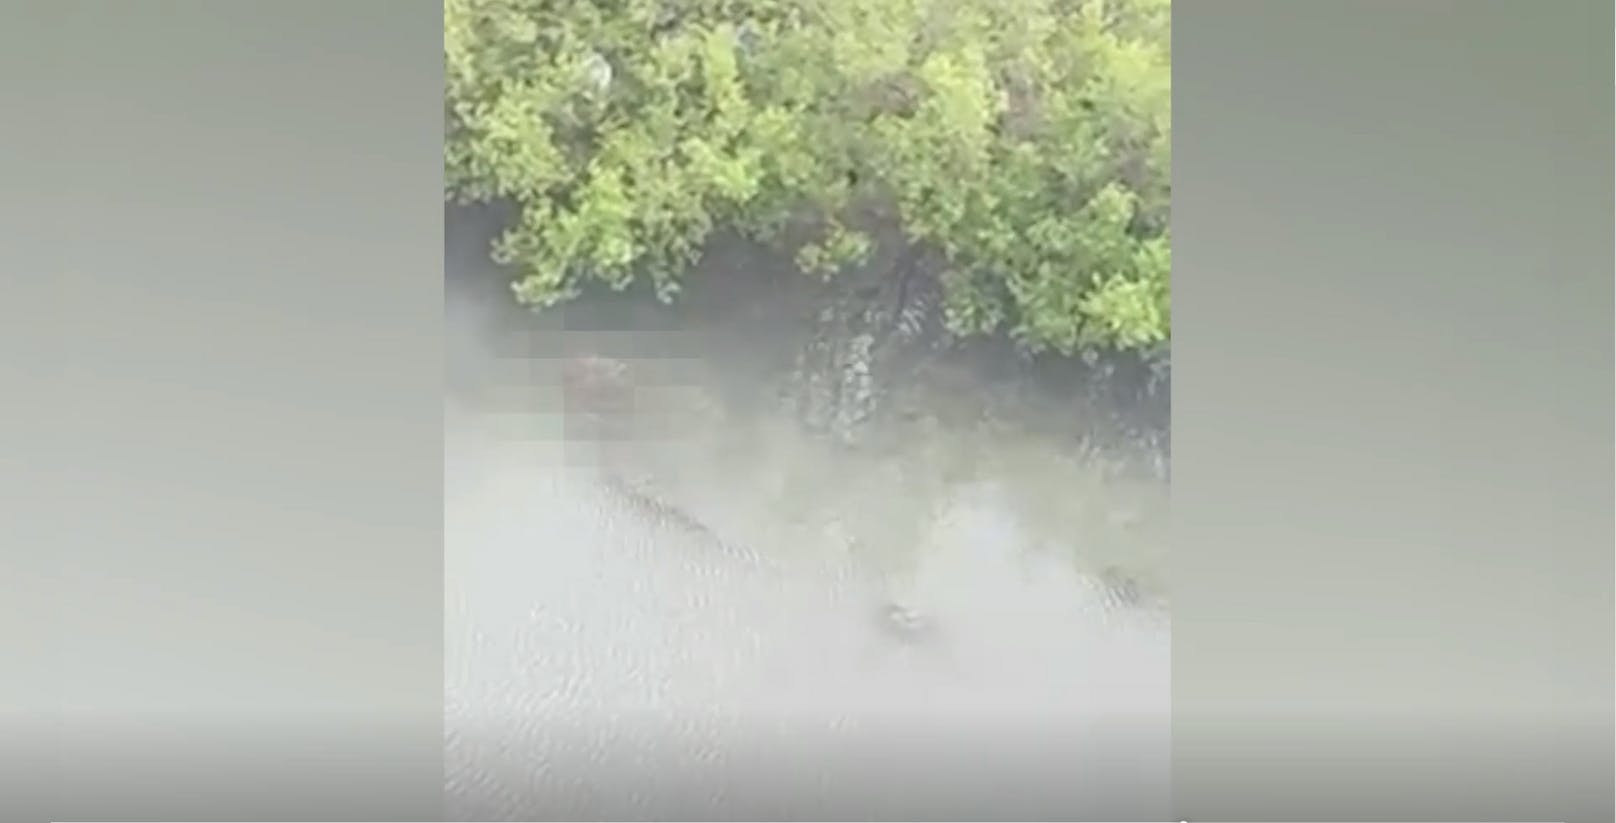 Krokodil tötet Bub (1) in Ruderboot – Vater hilflos